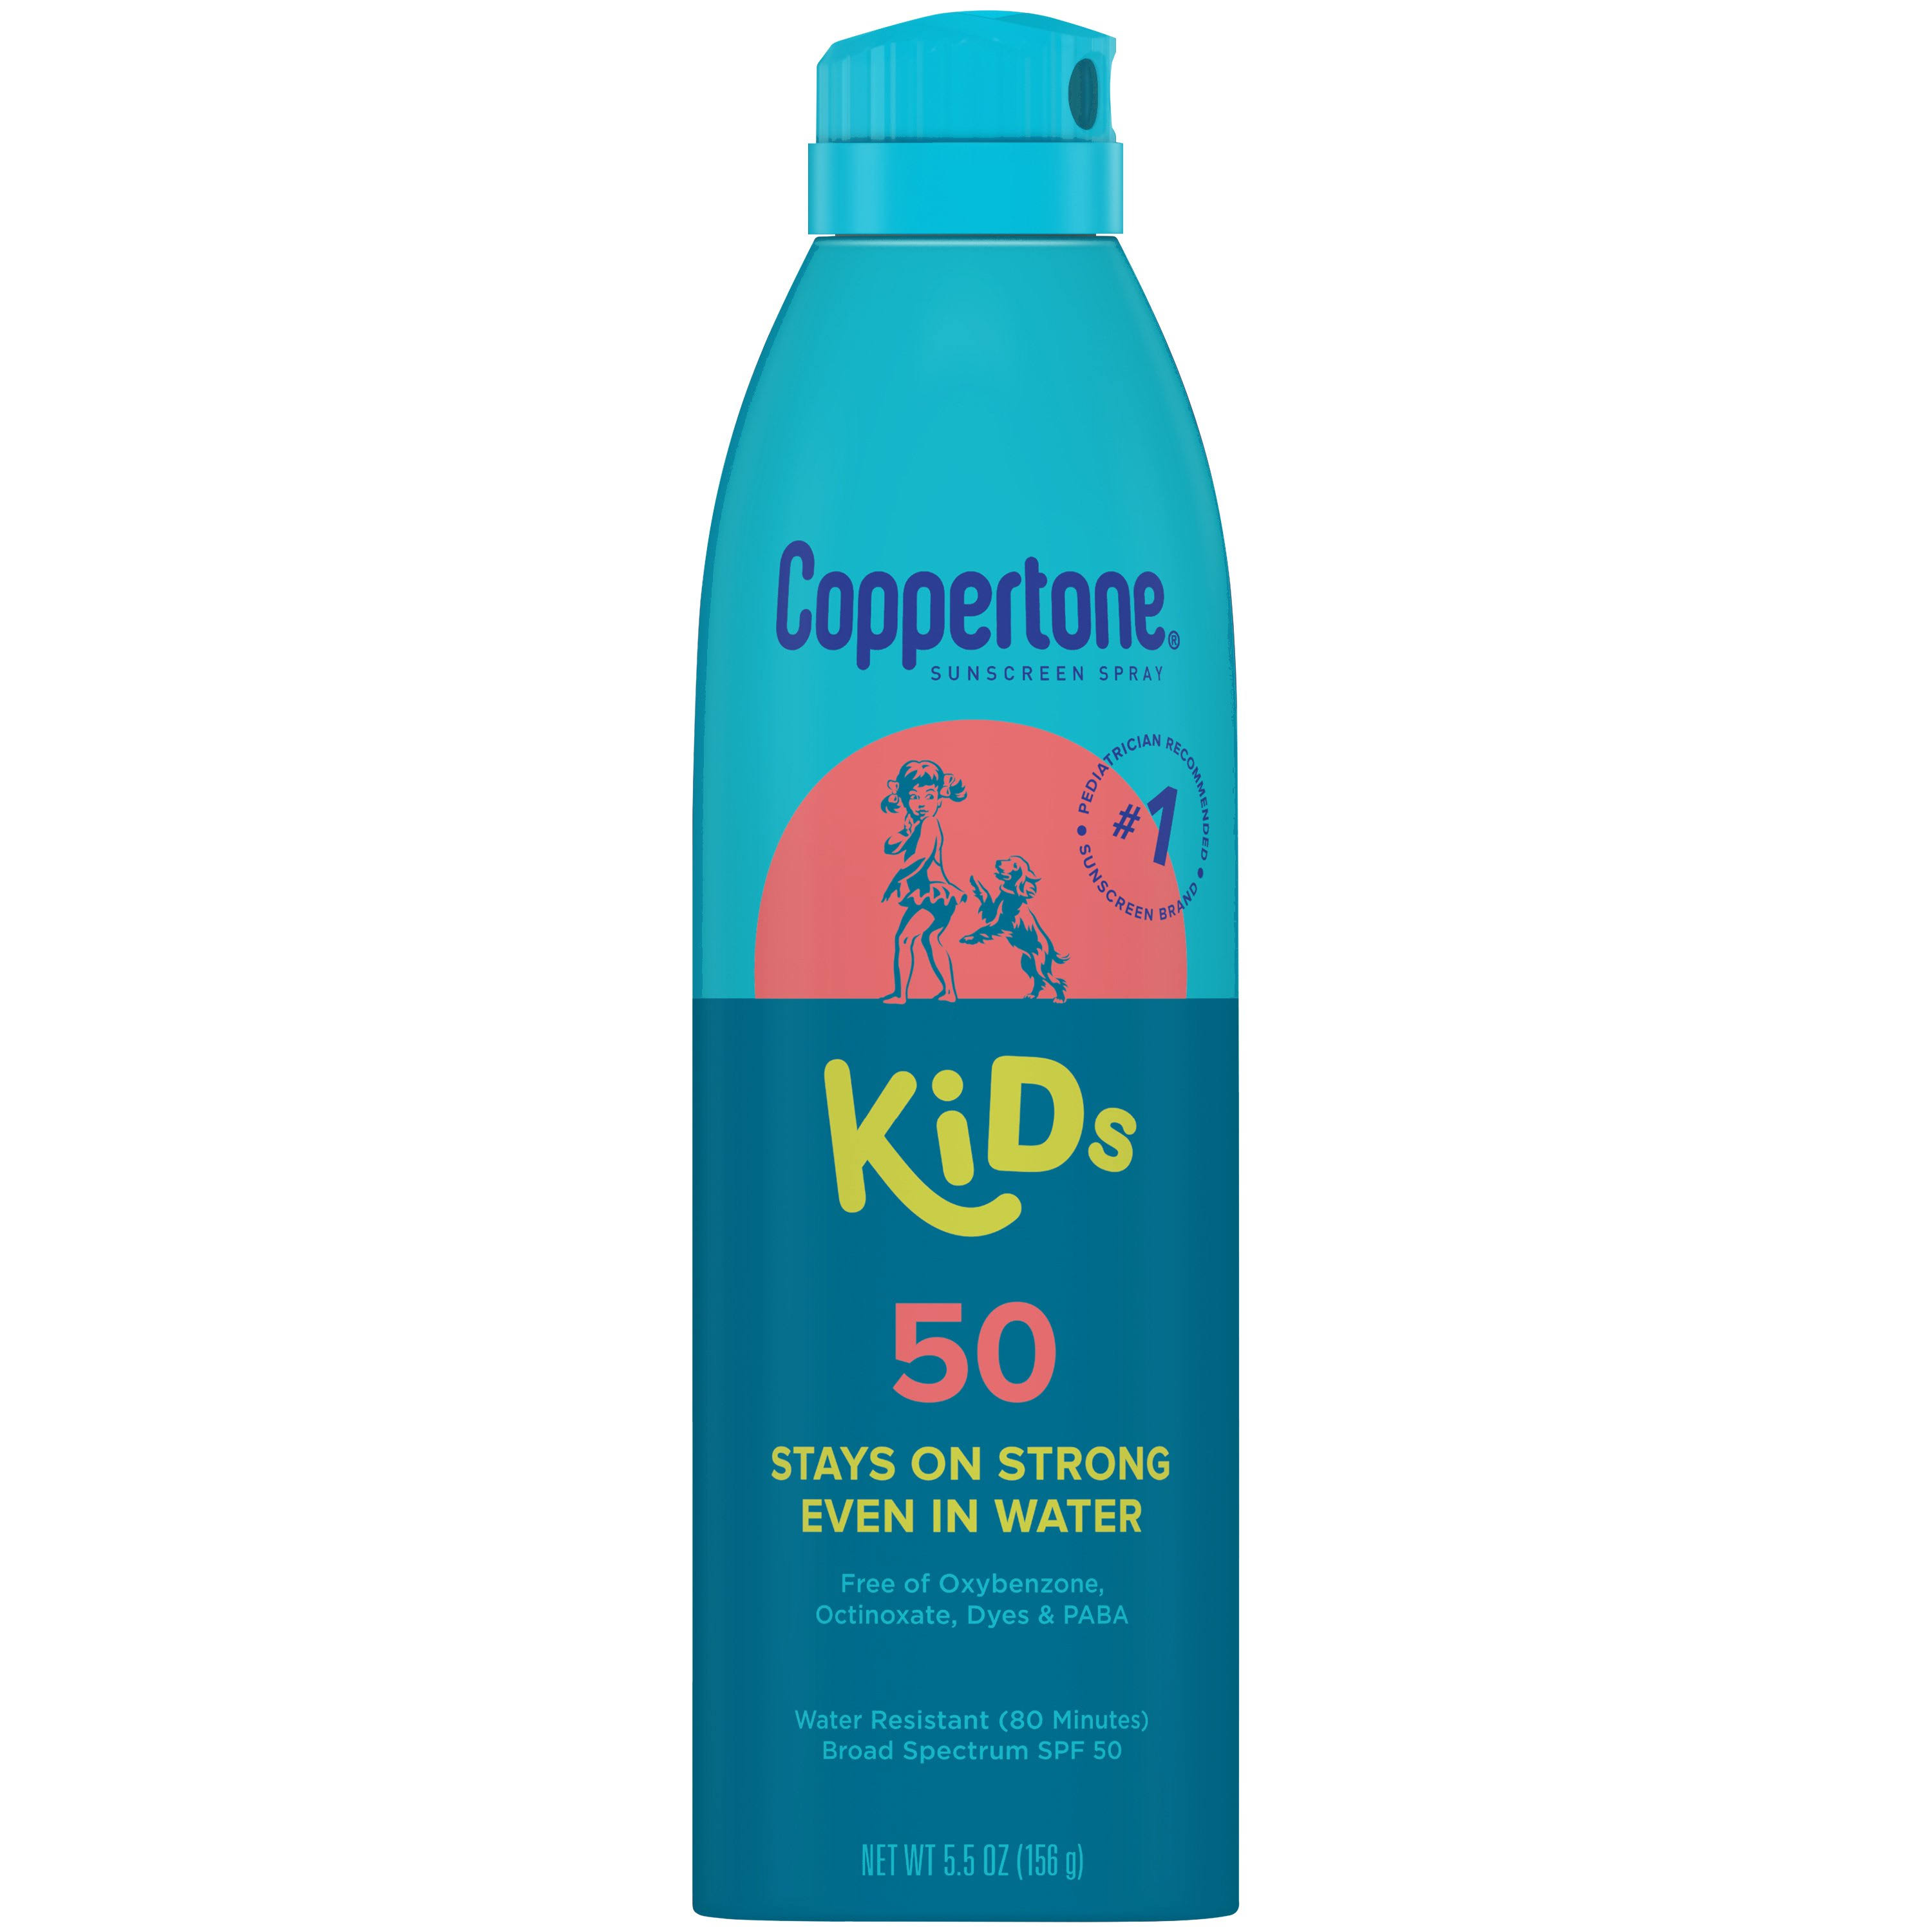 2x Coppertone Kids 50 Sunscreen Spray 5 5oz Each